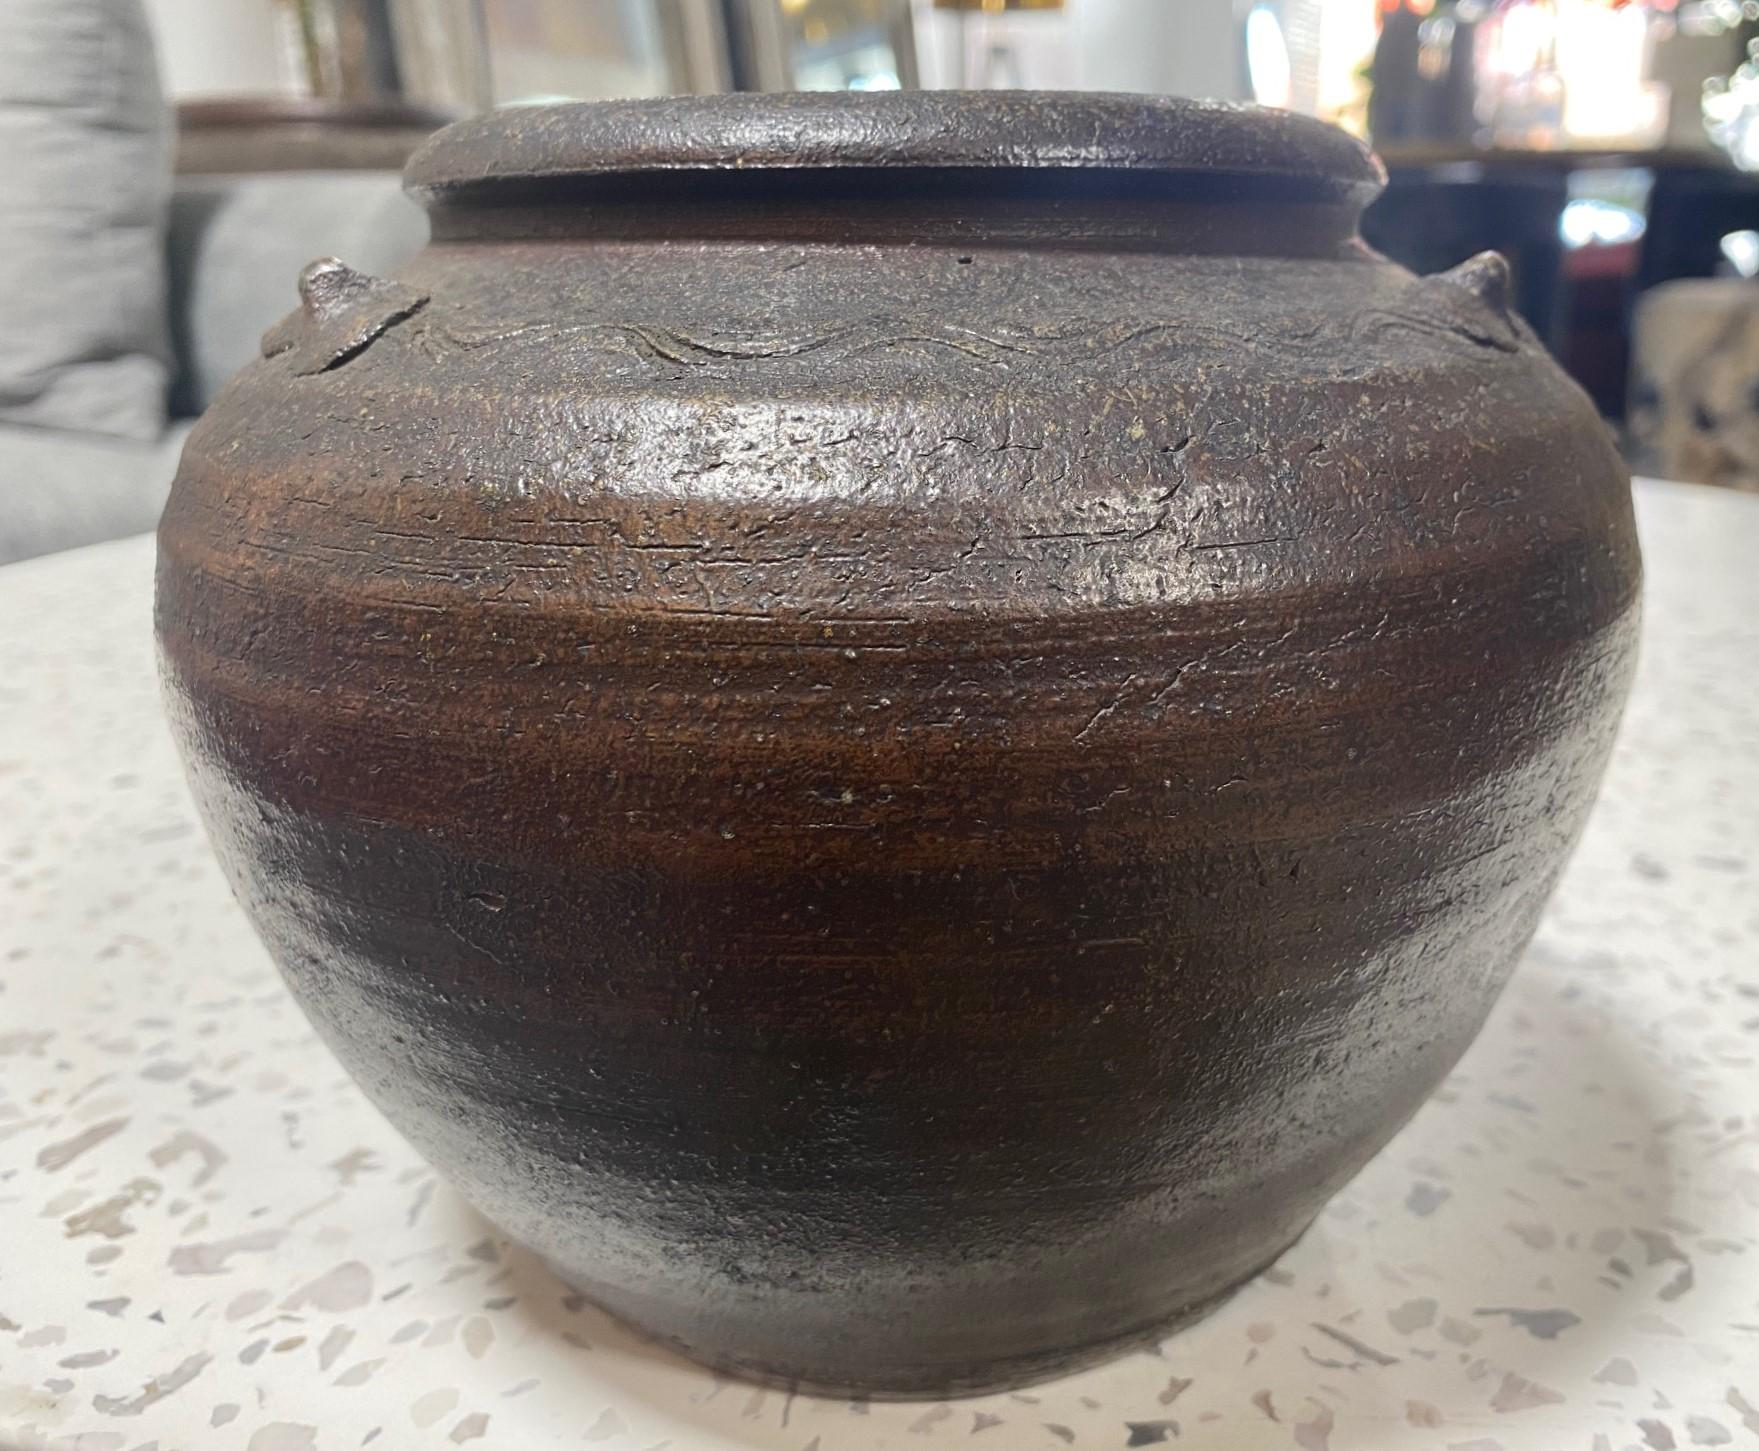 Kaneshige Toyo National Treasure Signed Japanese Bizen Pottery Tsubo Jar Vase For Sale 2